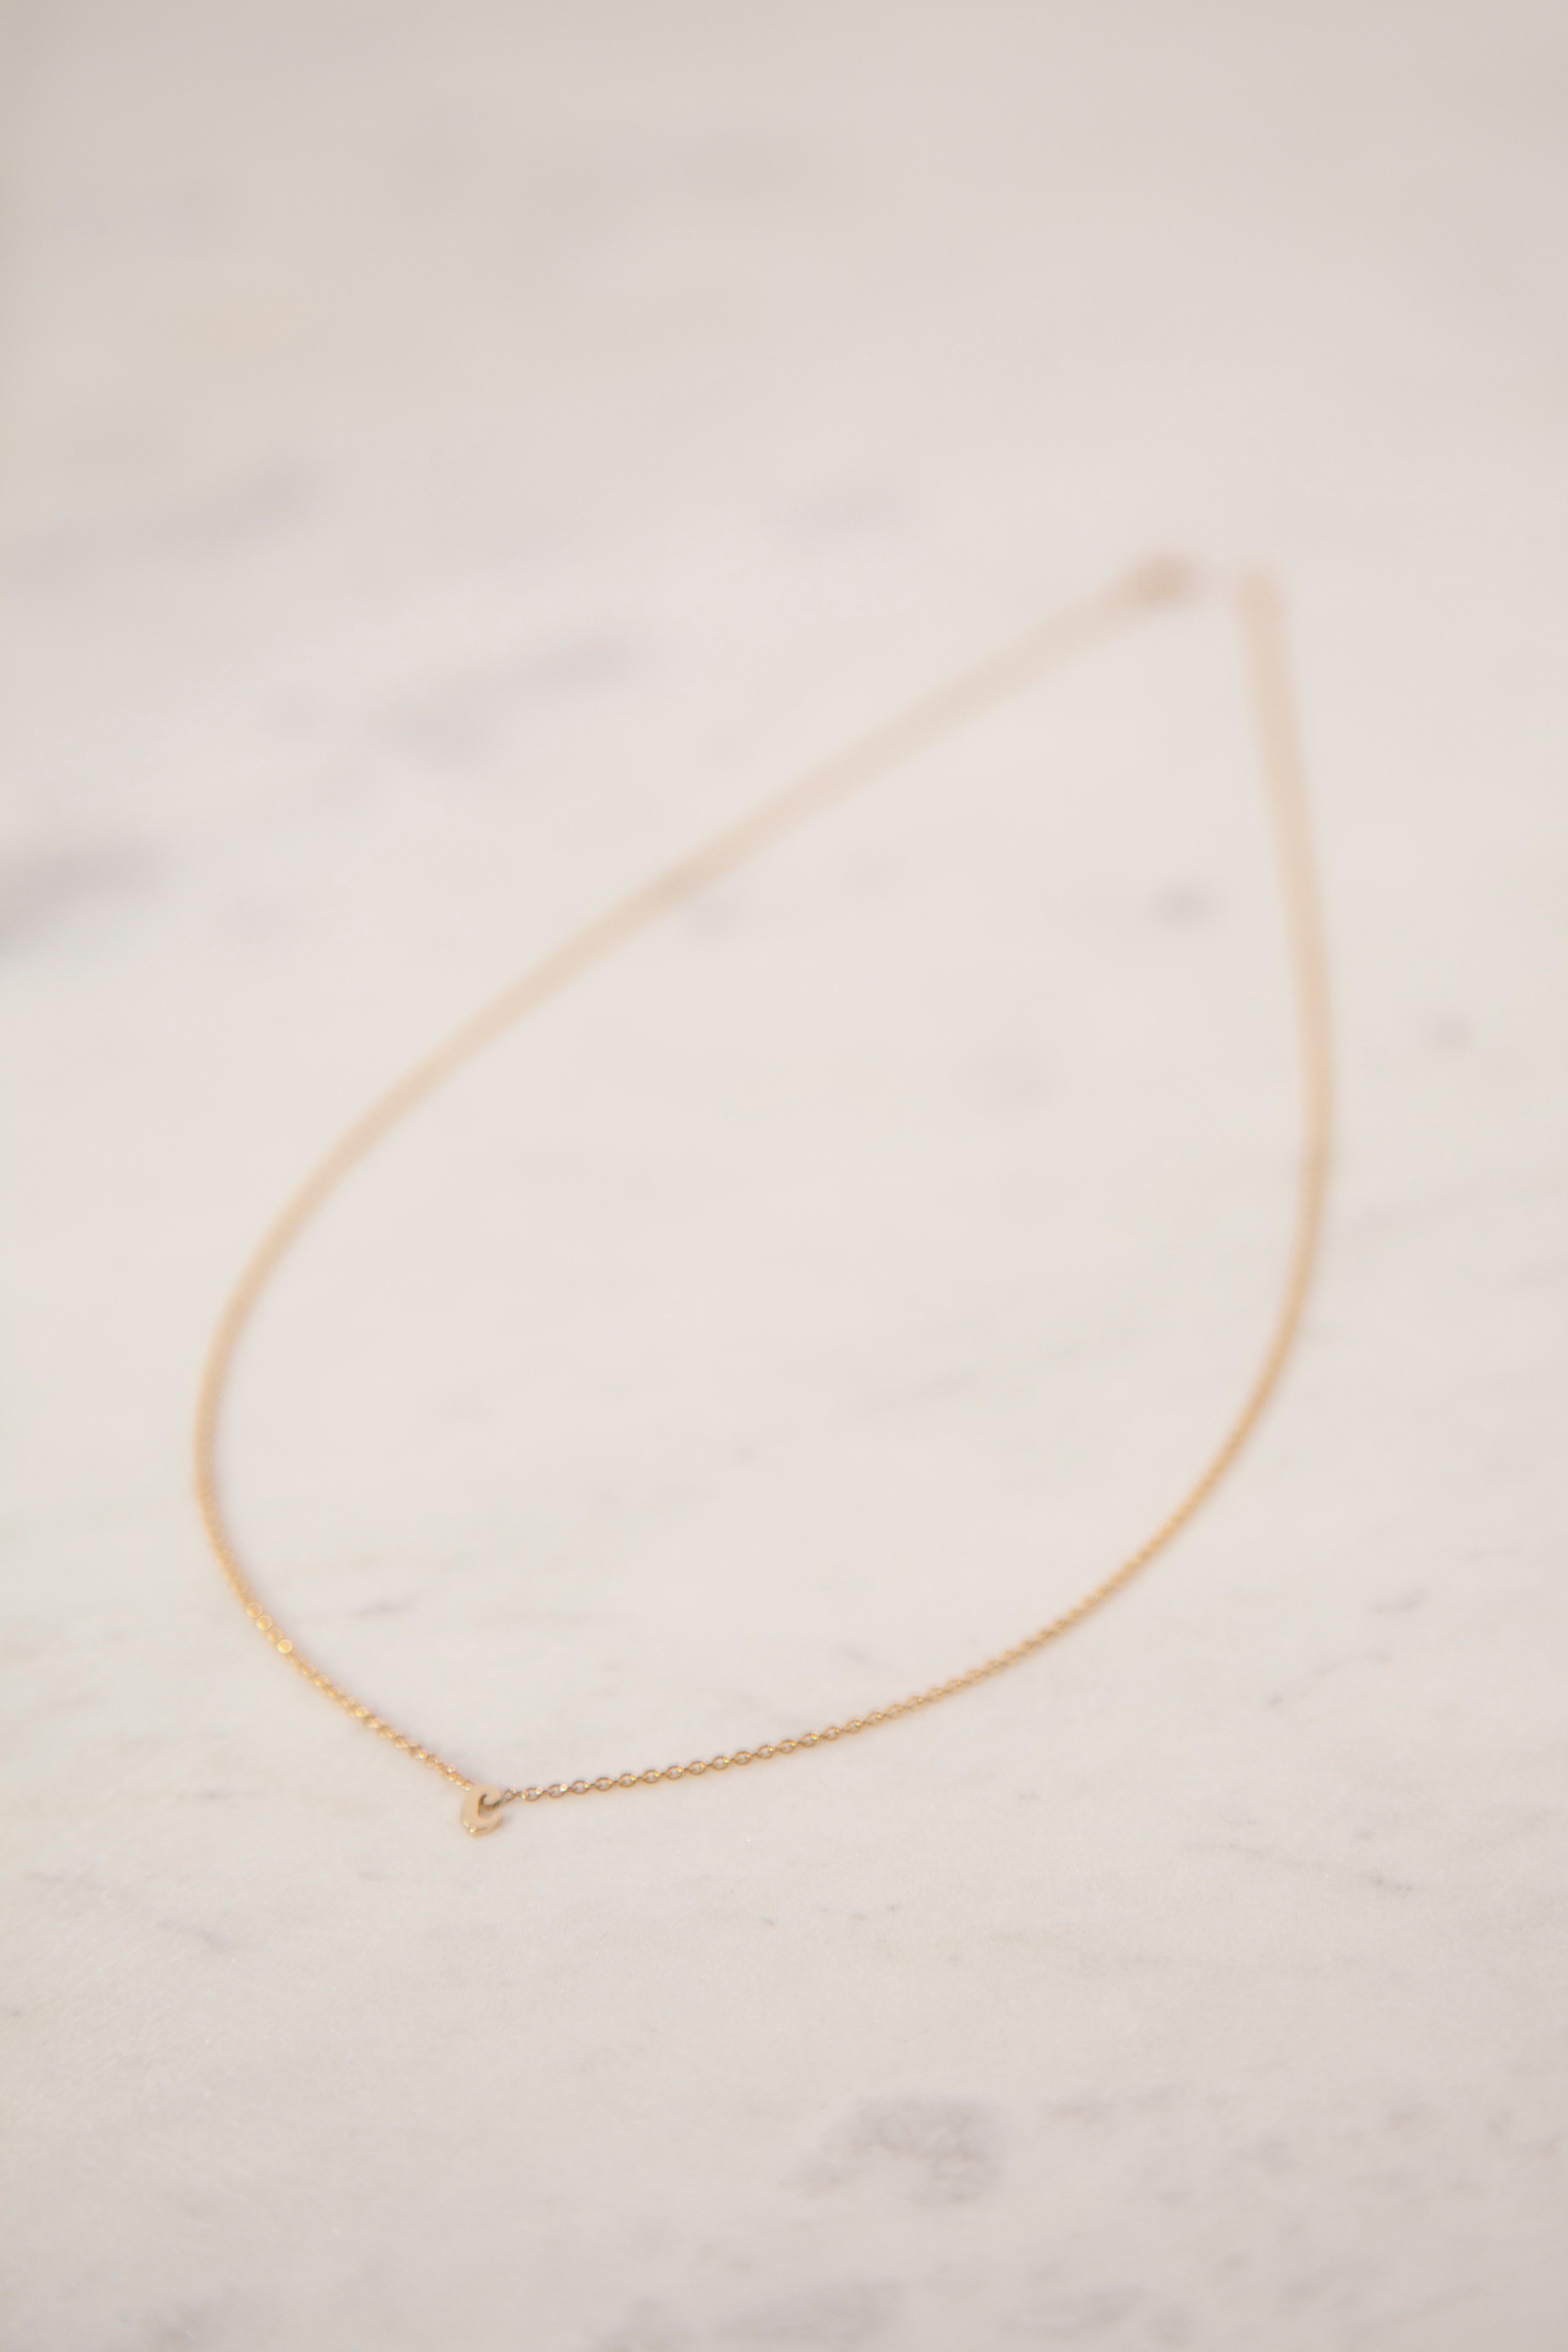 Zipper-D-Do-Dah Necklace – Through The Eyes Of A Quilter